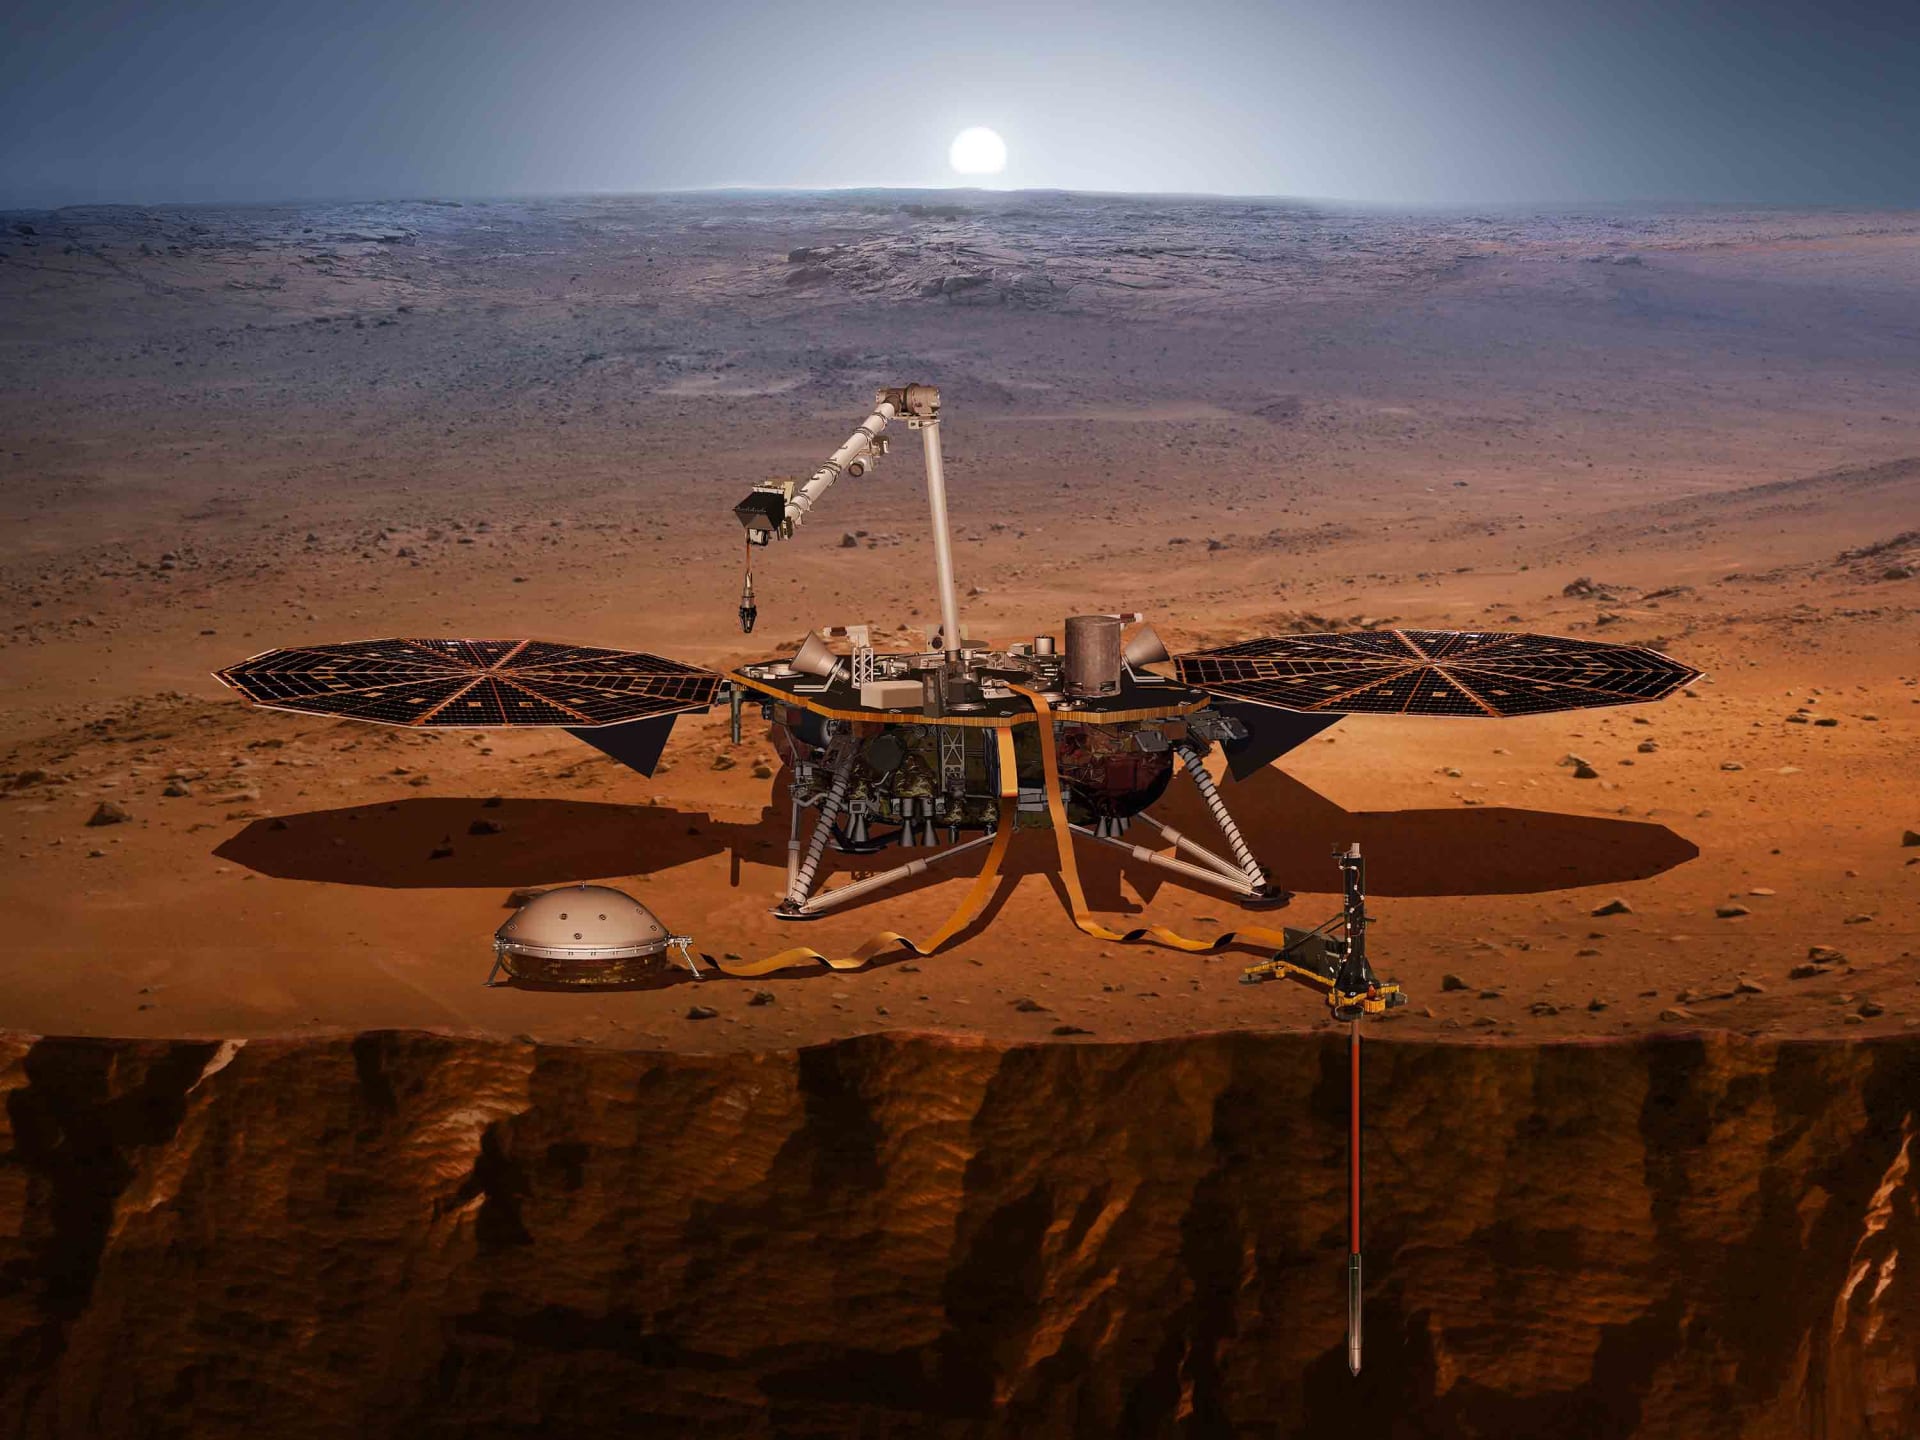 وكالة "ناسا" الفضائية تكتشف أنّ المريخ يدور بسرعة أكبر